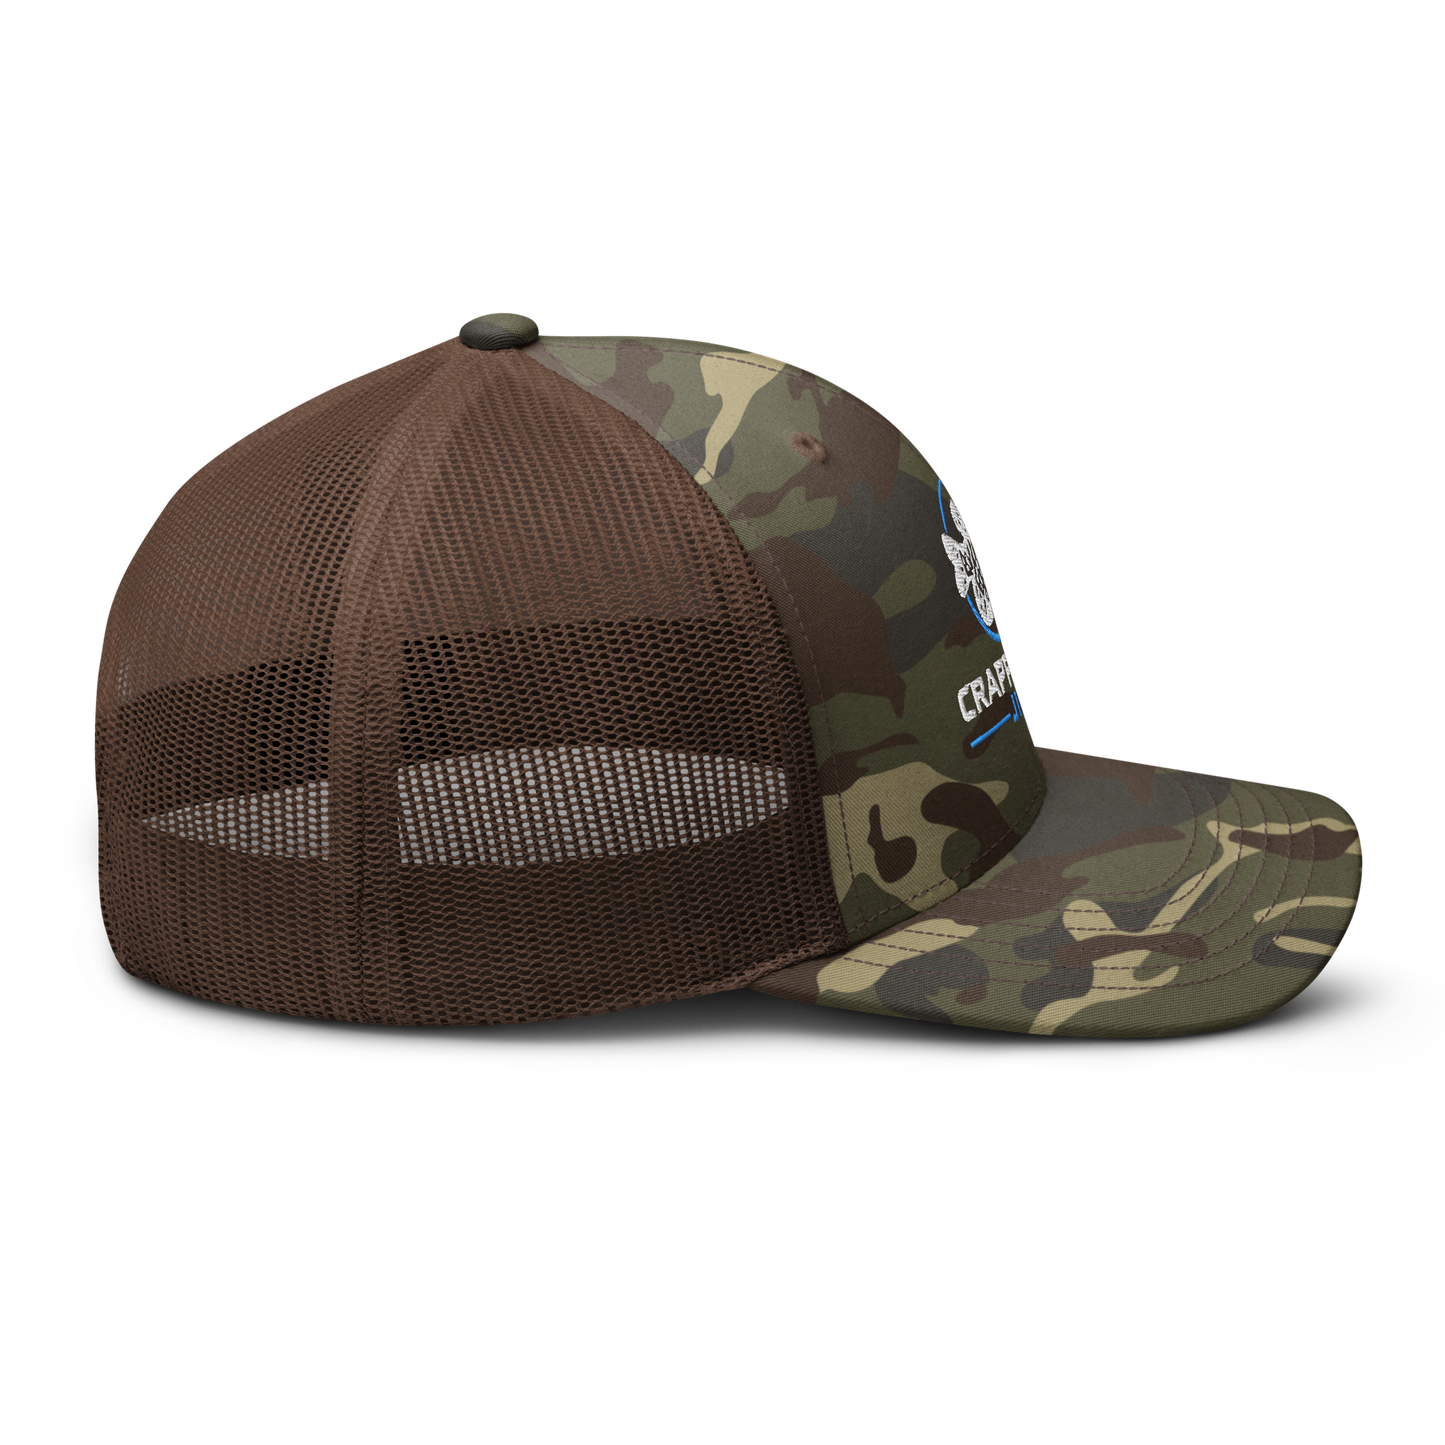 Crappie Man Jigs Camouflage trucker hat